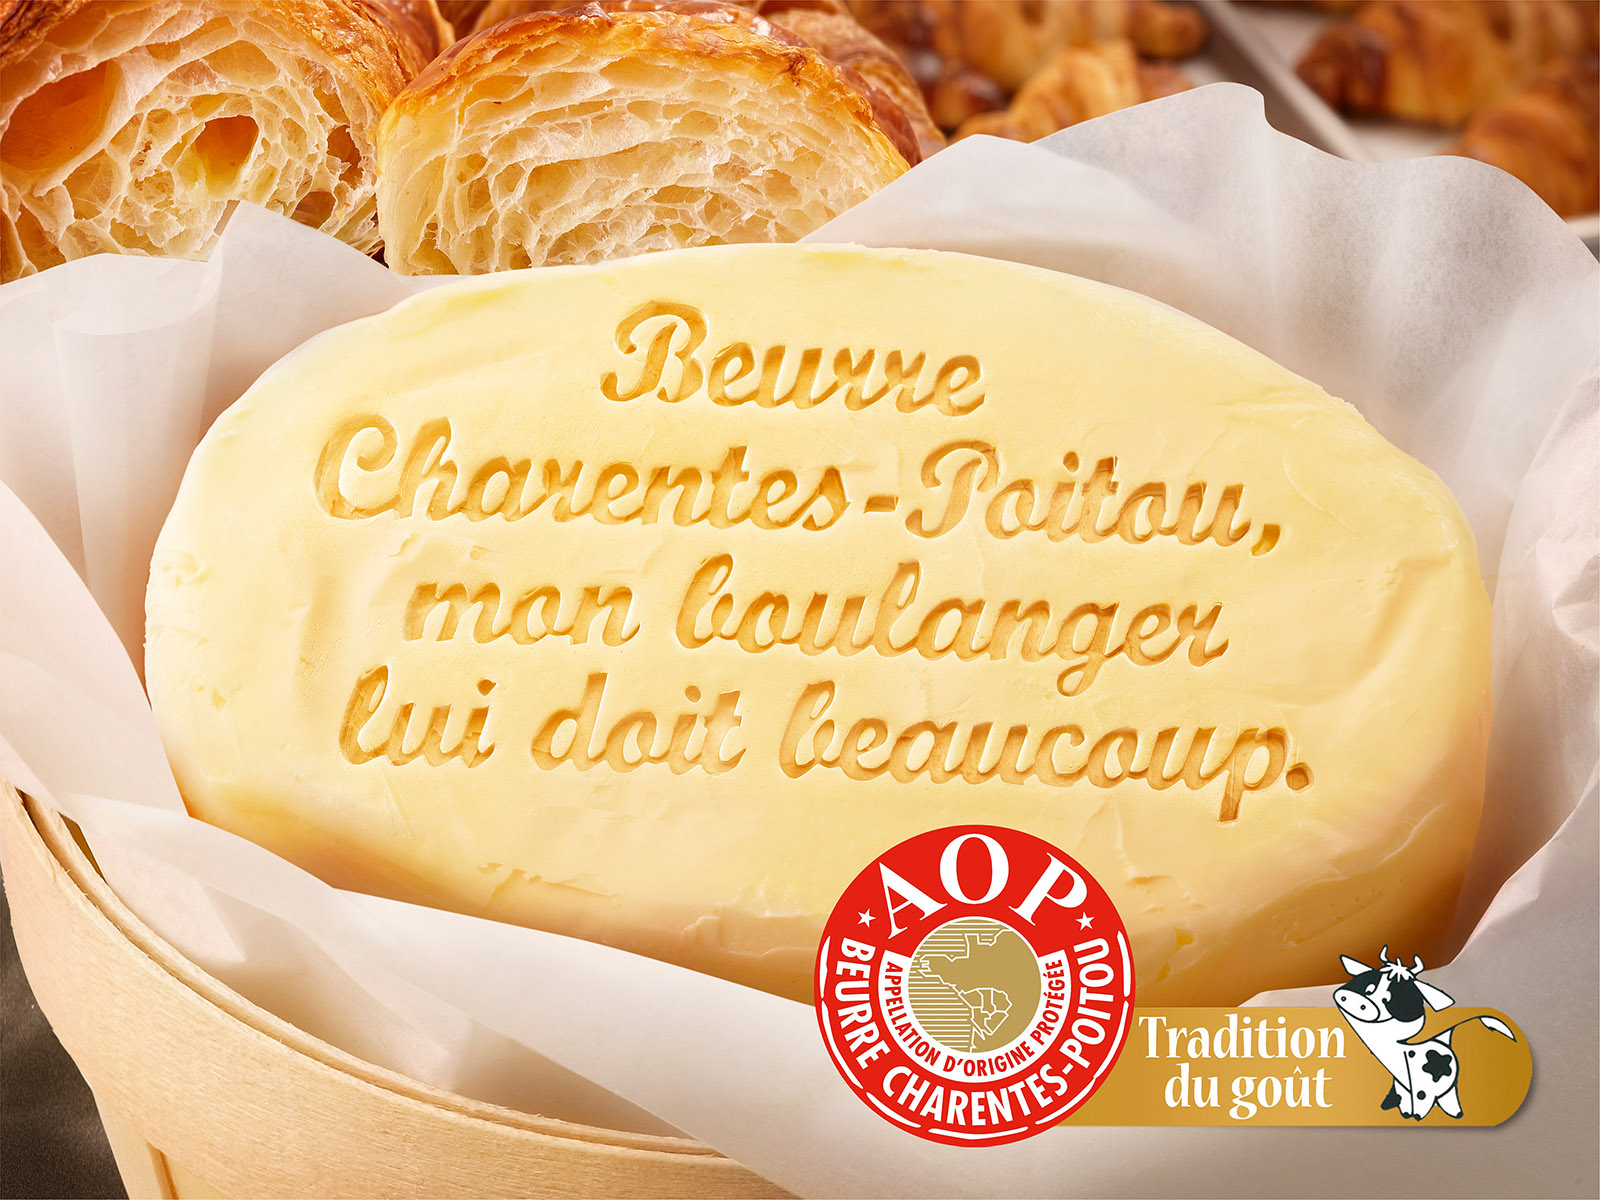 Campagne publicitaire, Beurre Charentes-Poitou AOP